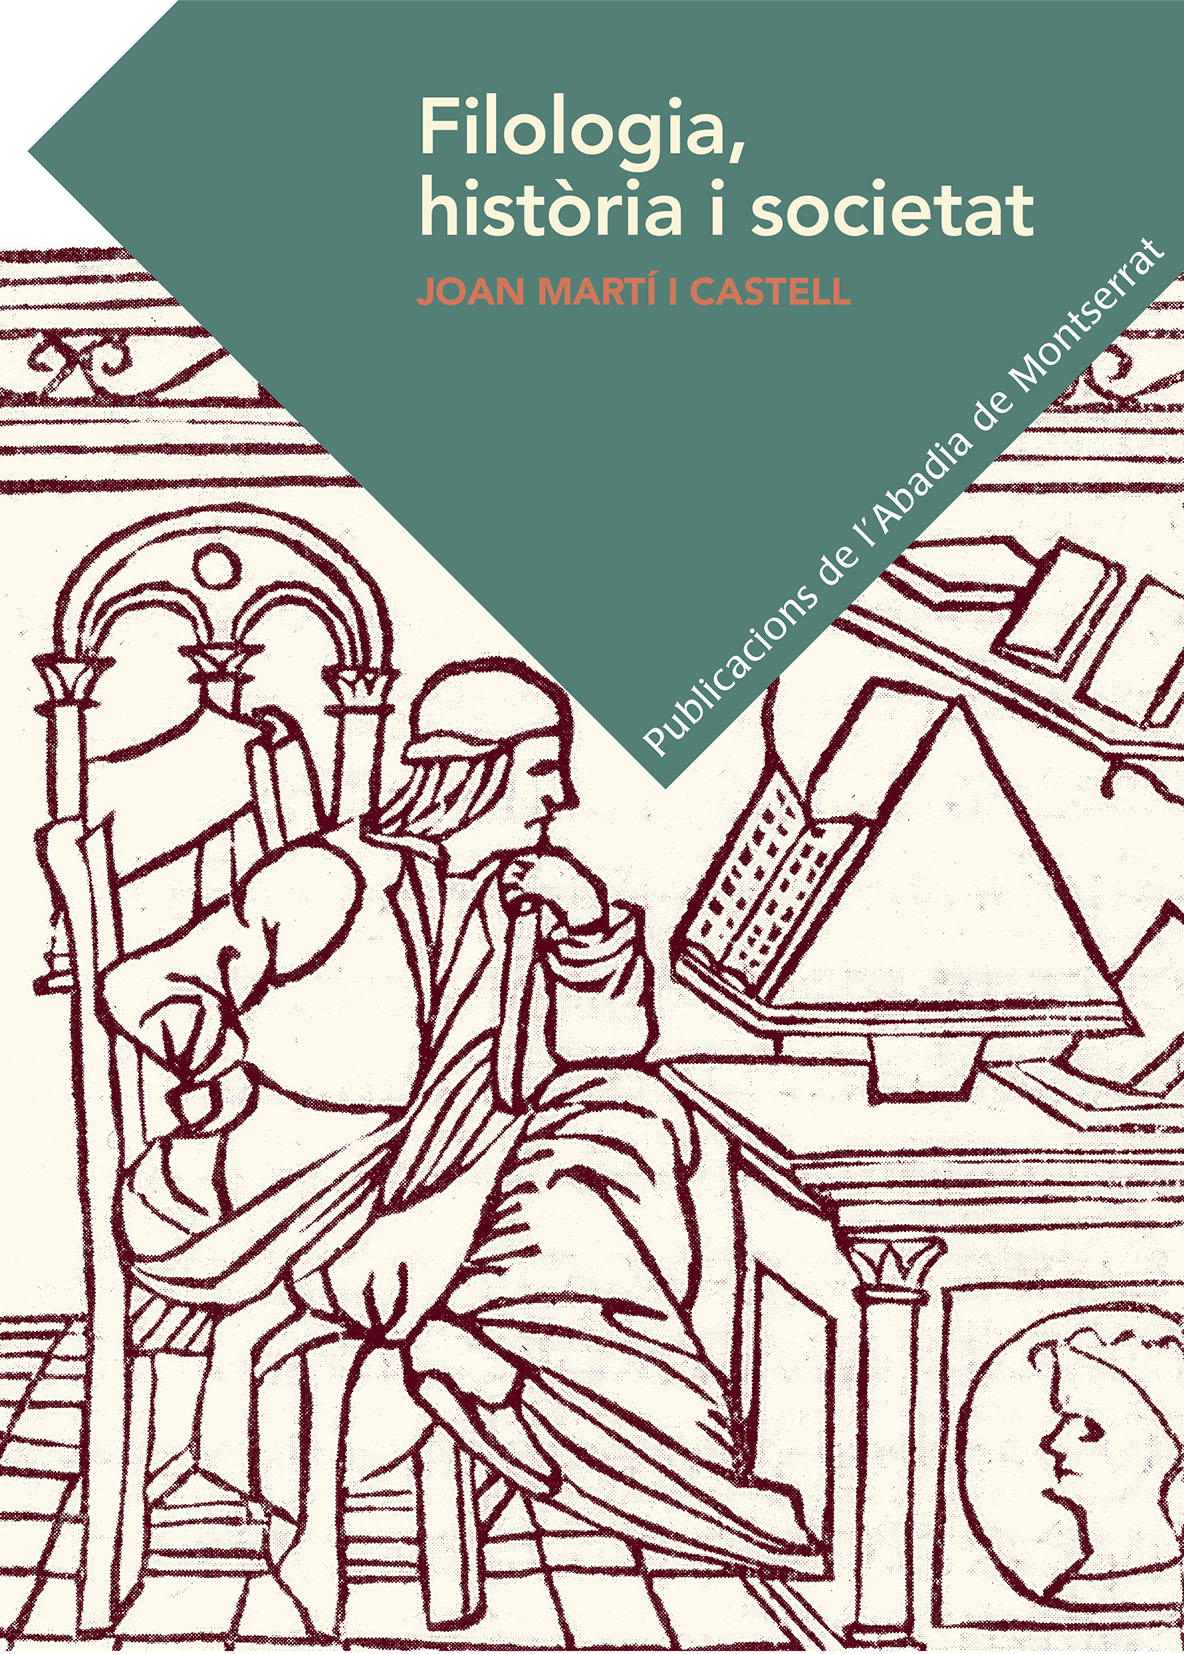 Joan Martí i Castell